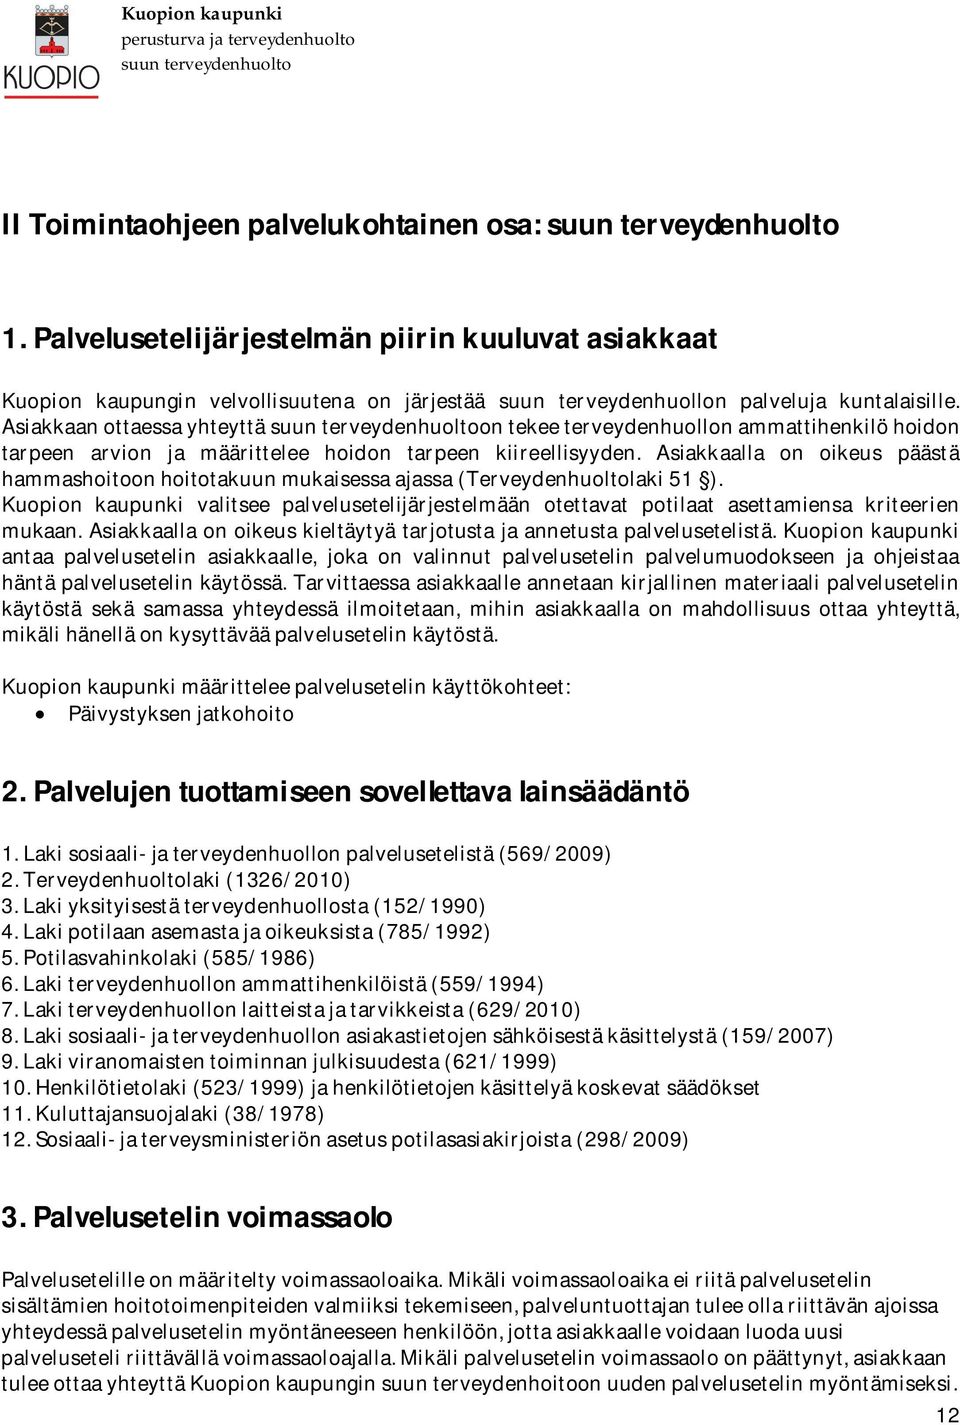 Asiakkaalla on oikeus päästä hammashoitoonhoitotakuunmukaisessaajassa(terveydenhuoltolaki51 ). Kuopion kaupunki valitsee palvelusetelijärjestelmään otettavat potilaat asettamiensa kriteerien mukaan.